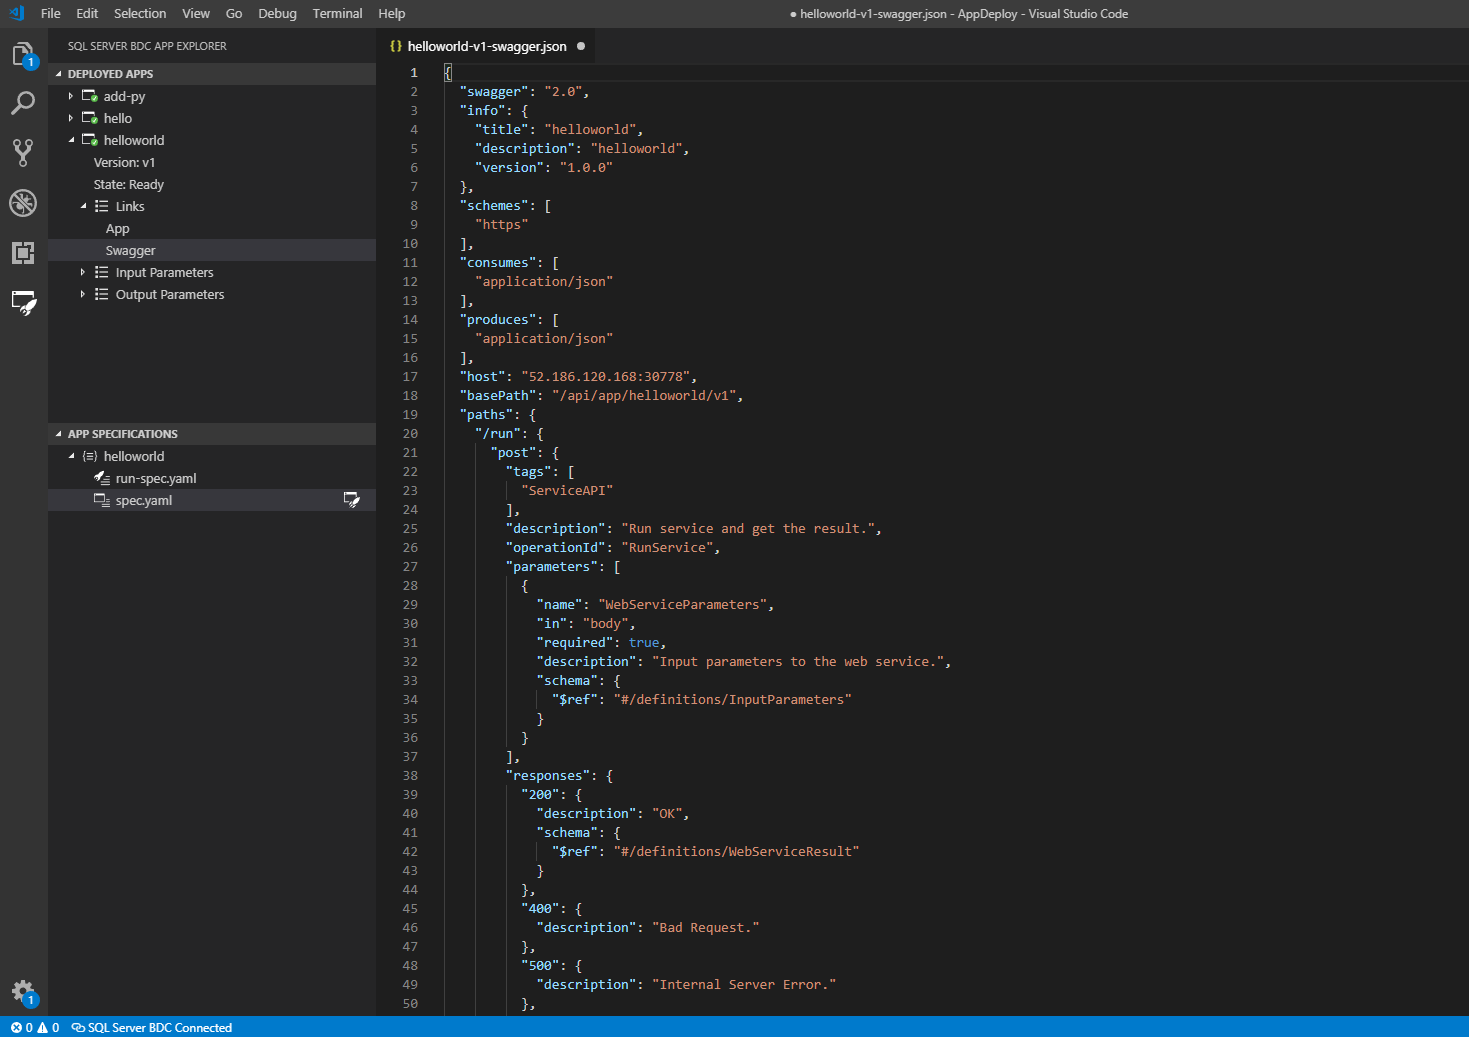 Capture d’écran montrant le fichier swagger.json affiché dans l’interface utilisateur de Visual Studio Code.